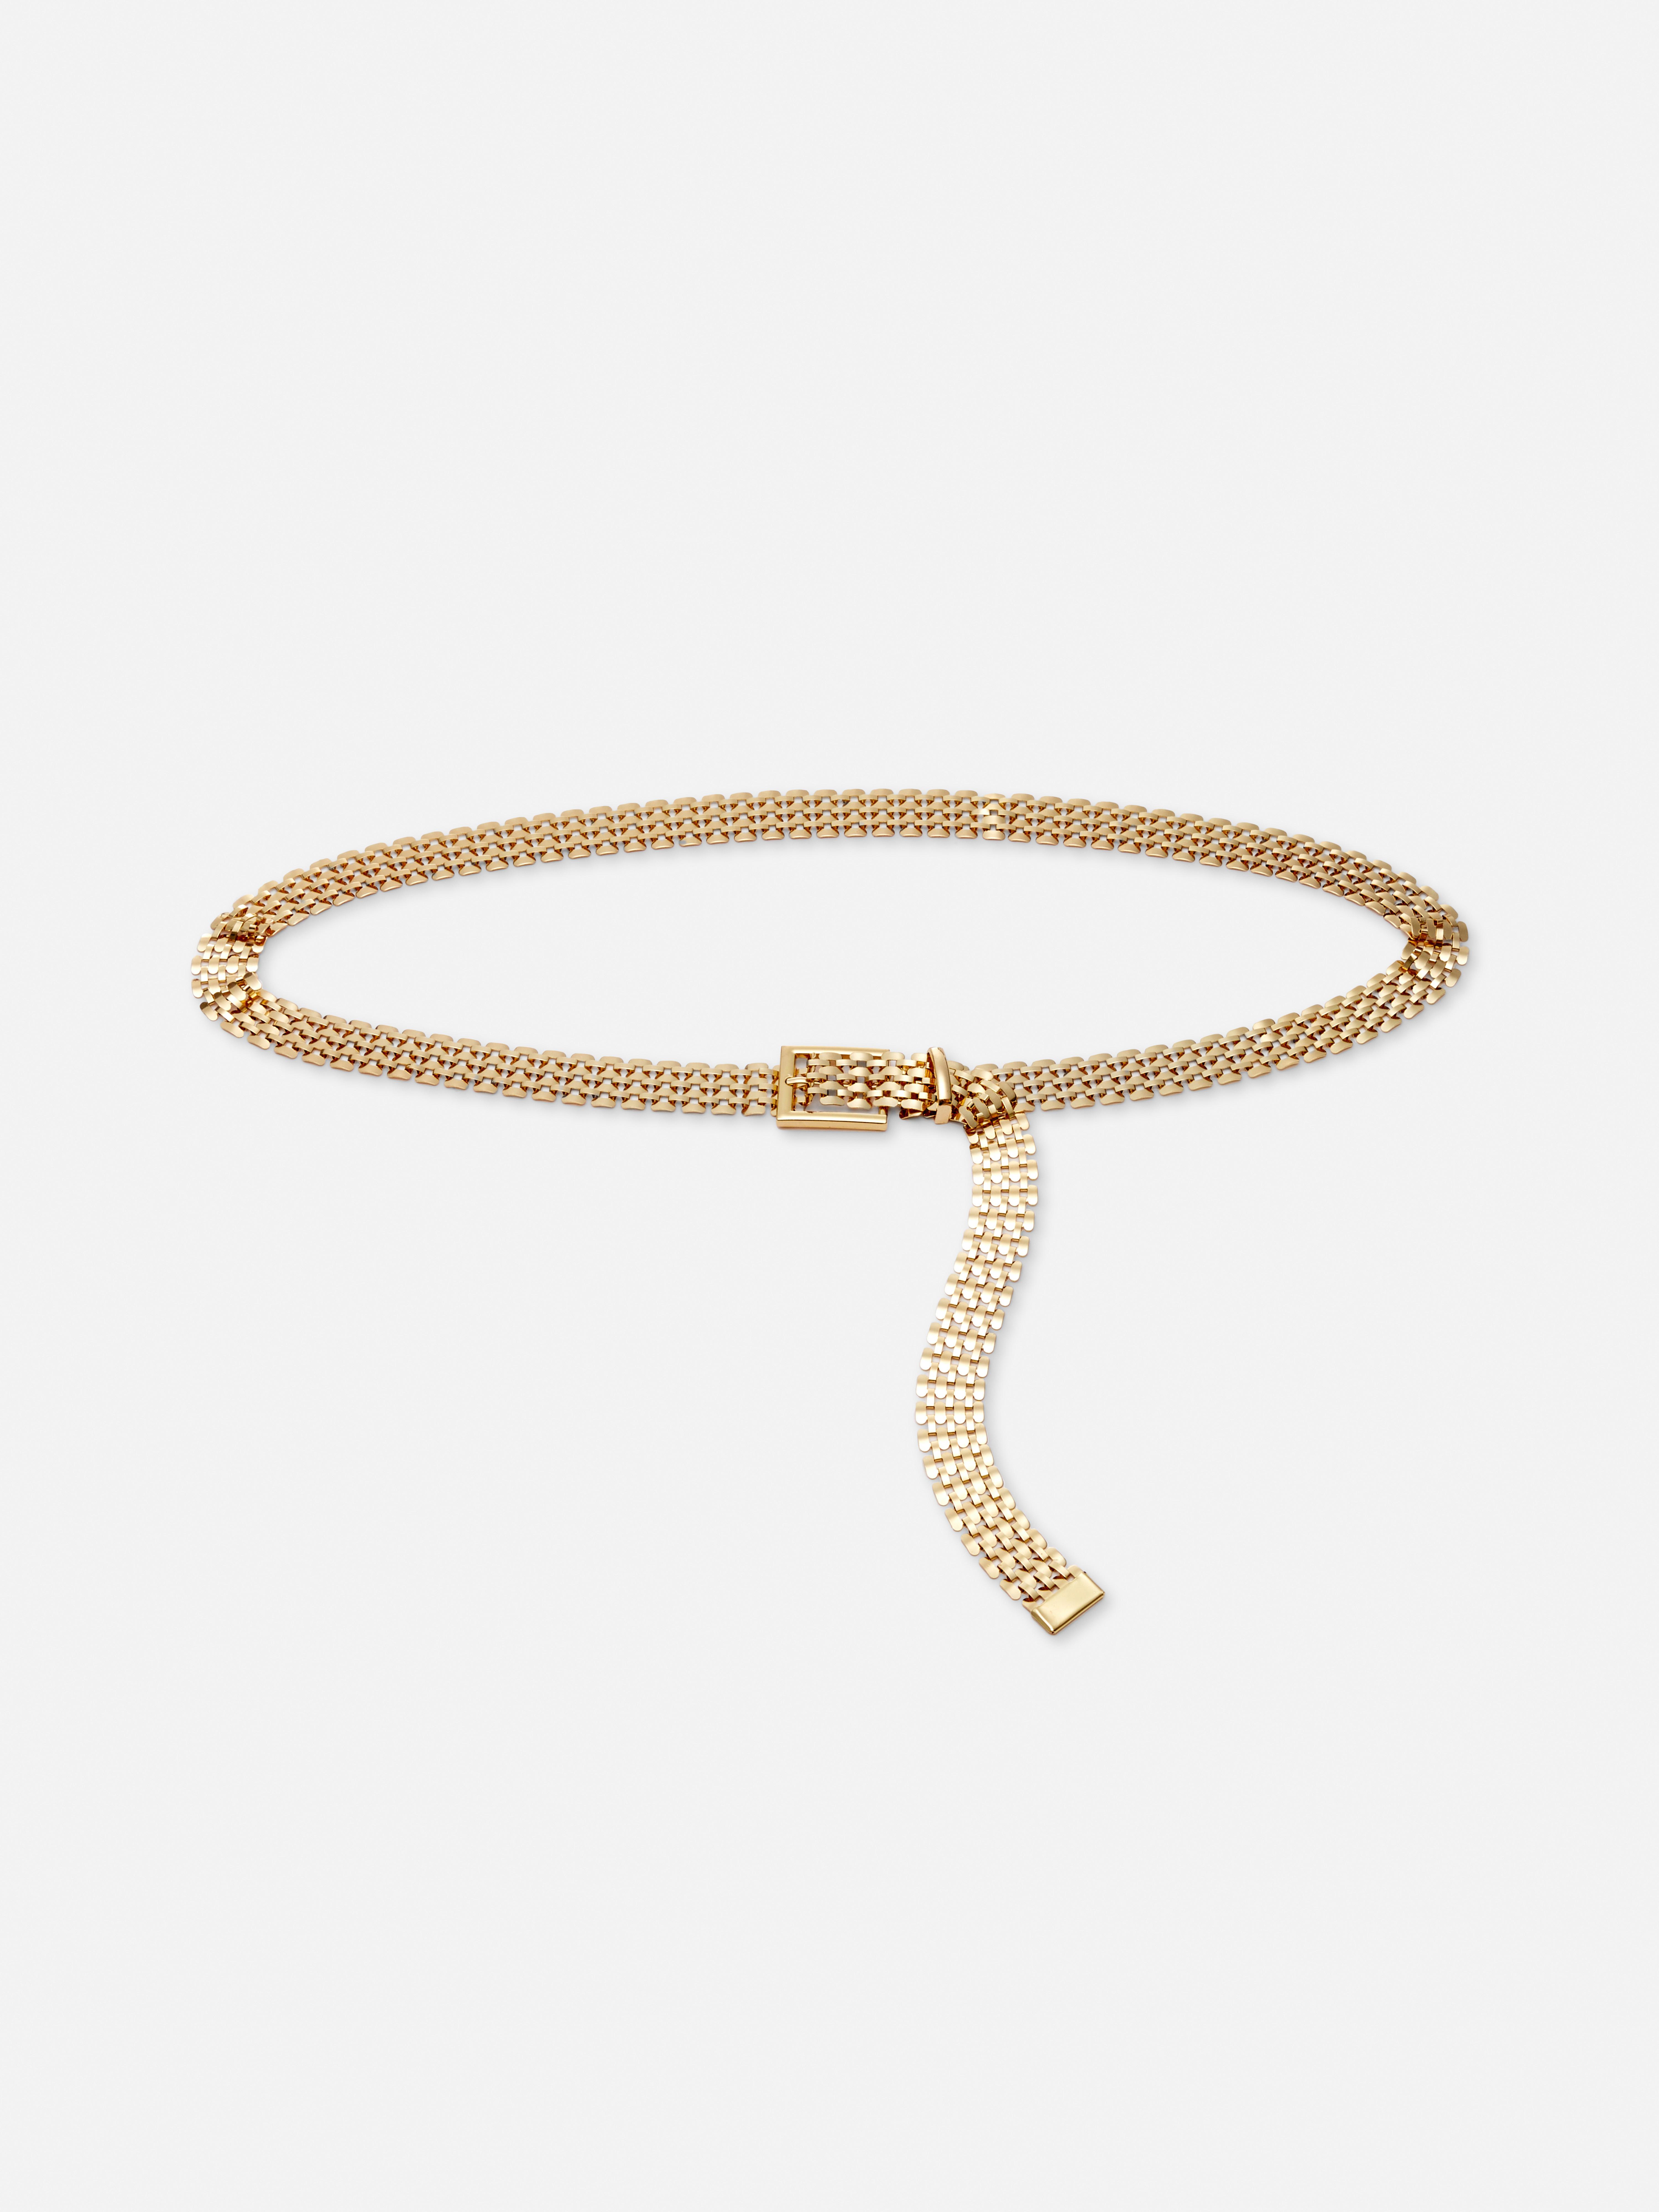 Cinturón dorado de cadena ajustable | Cinturones mujer | Accesorios de mujer | Nuestra línea de moda femenina | Todos los productos Primark | Primark España